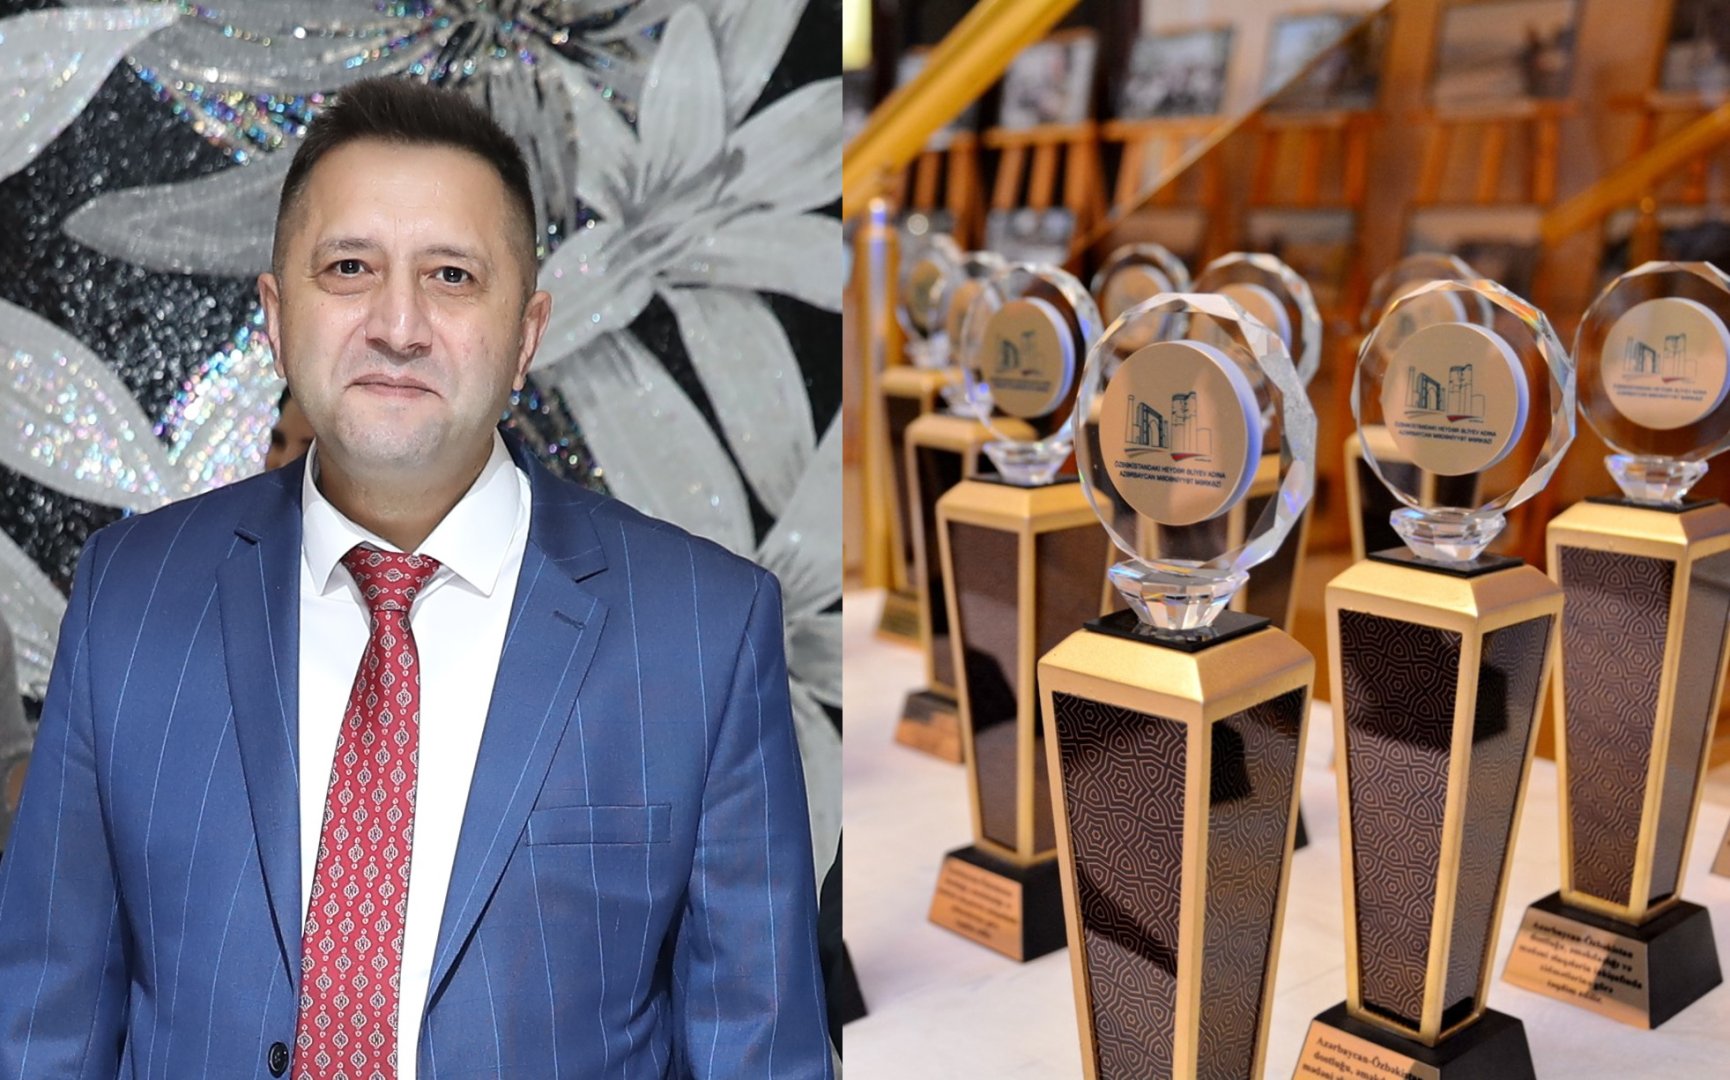 Корреспондент Trend Вугар Иманов удостоен награды Азербайджанского культурного центра имени Гейдара Алиева в Узбекистане  (ФОТО)